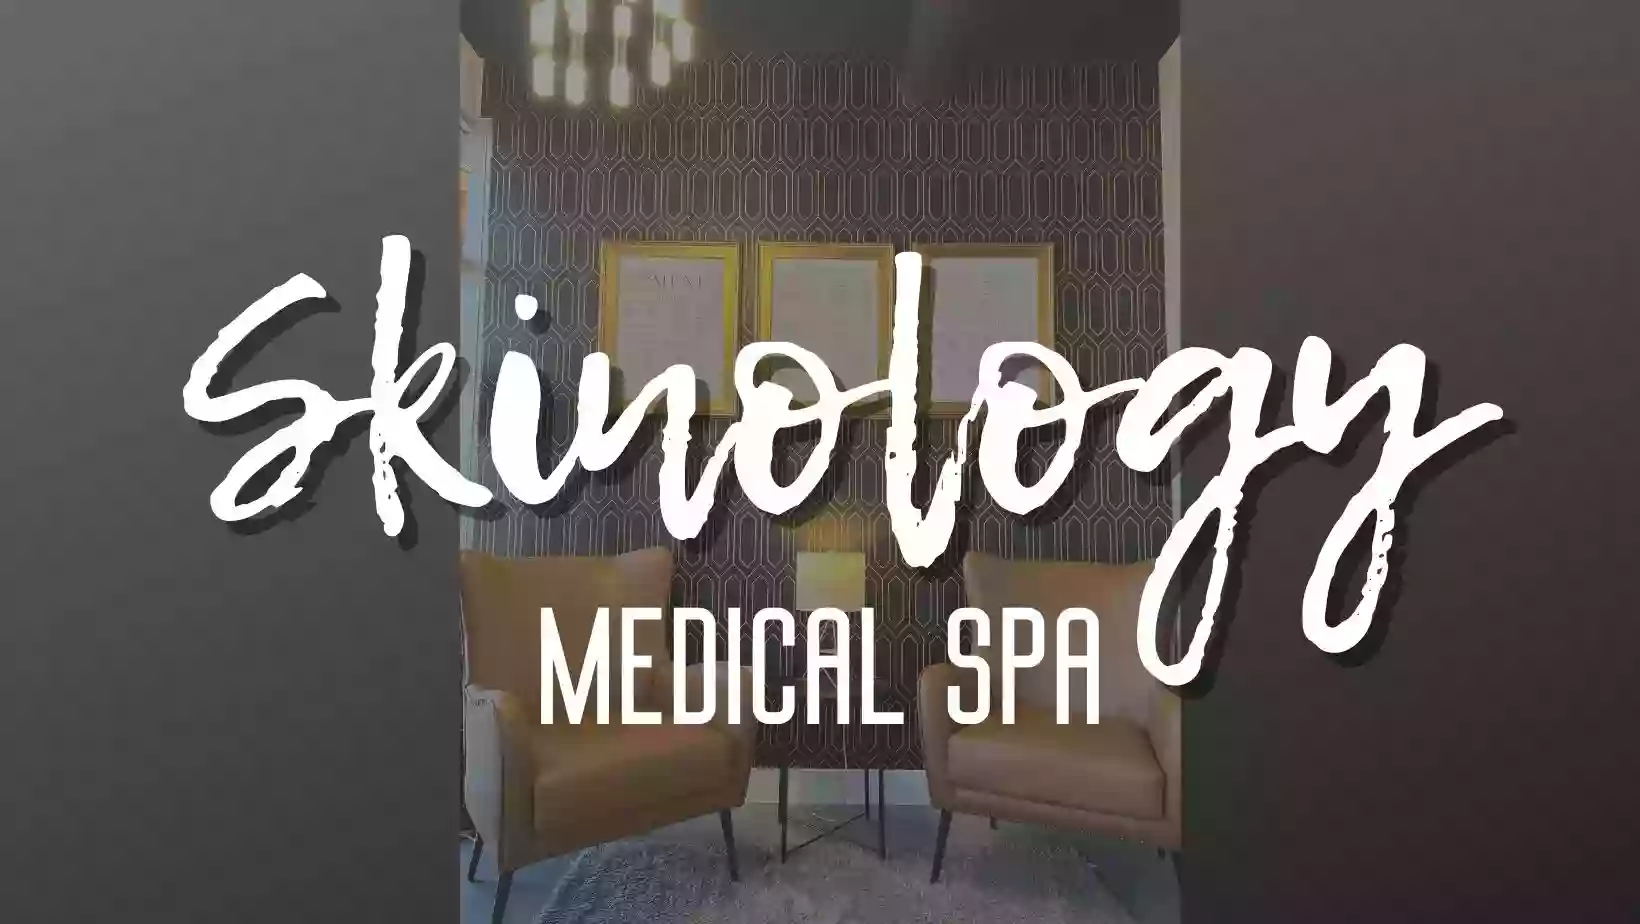 Skinology Medical Spa